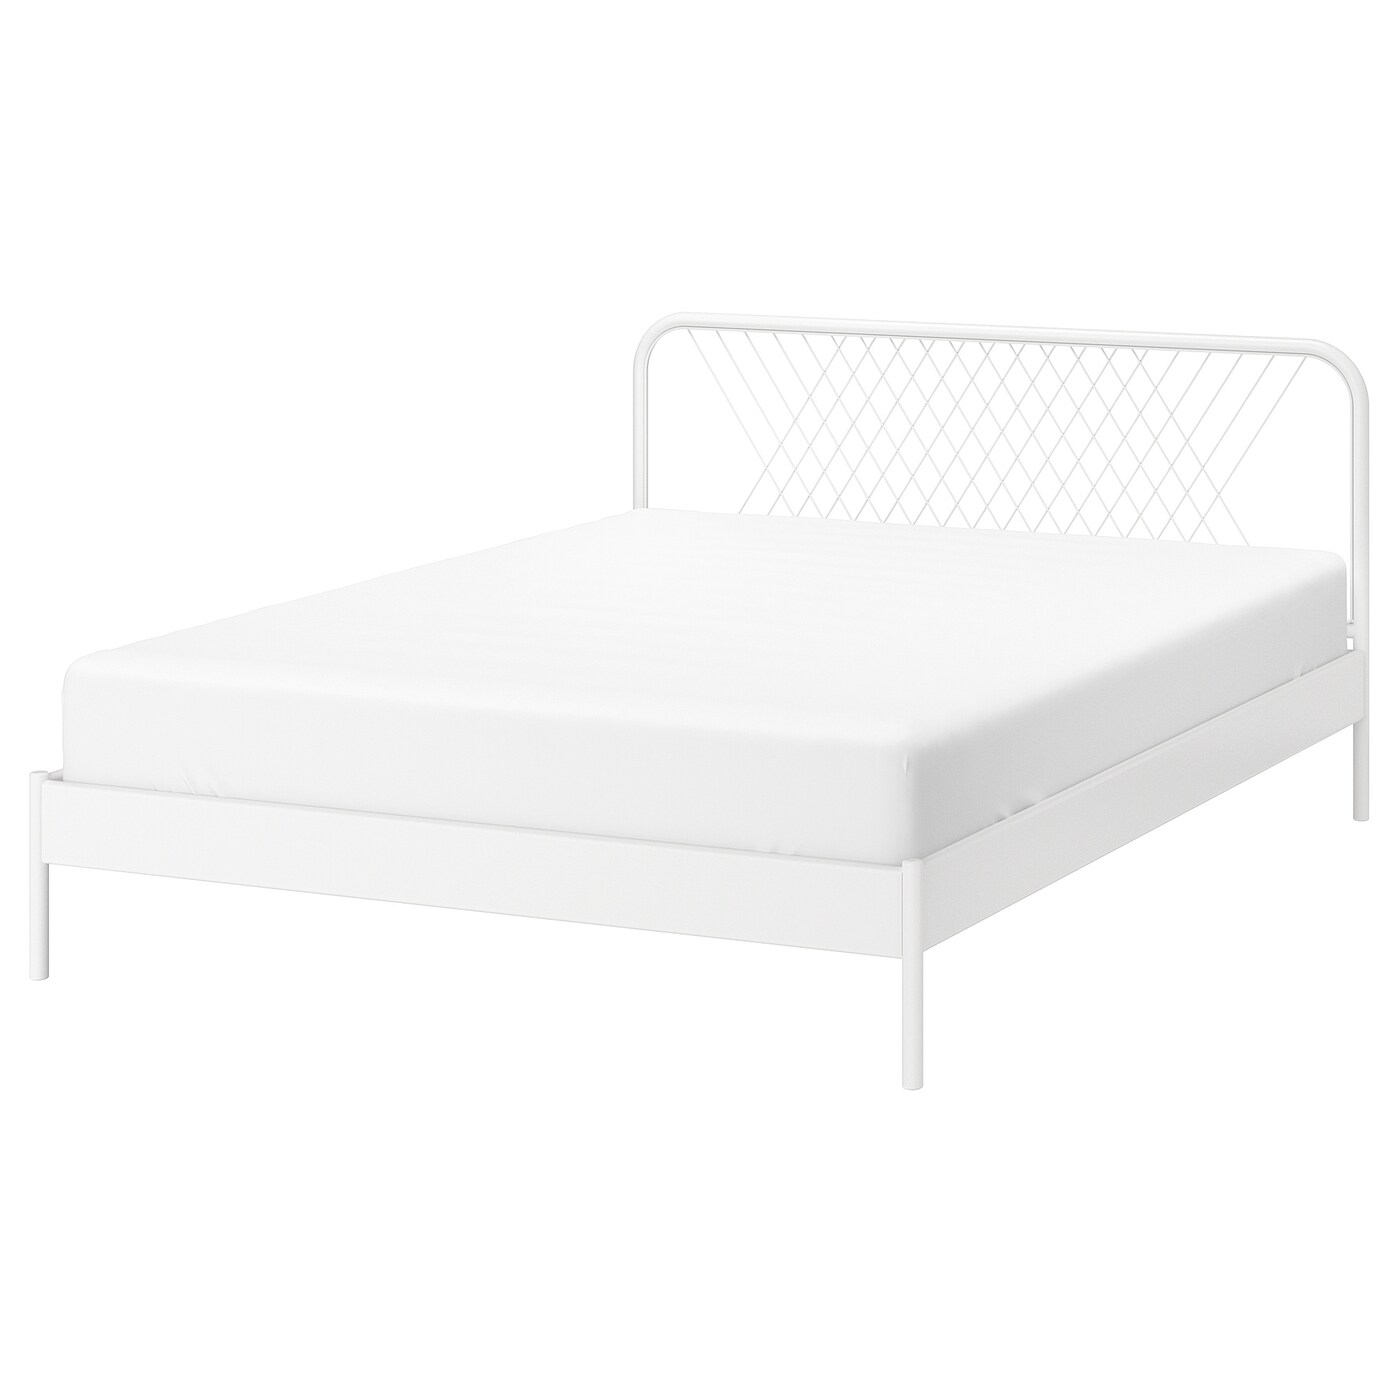 Каркас кровати - IKEA NESTTUN/LINDBÅDEN/LINDBADEN, 200х140 см, белый, НЕСТТУН/ЛИНДБАДЕН ИКЕА